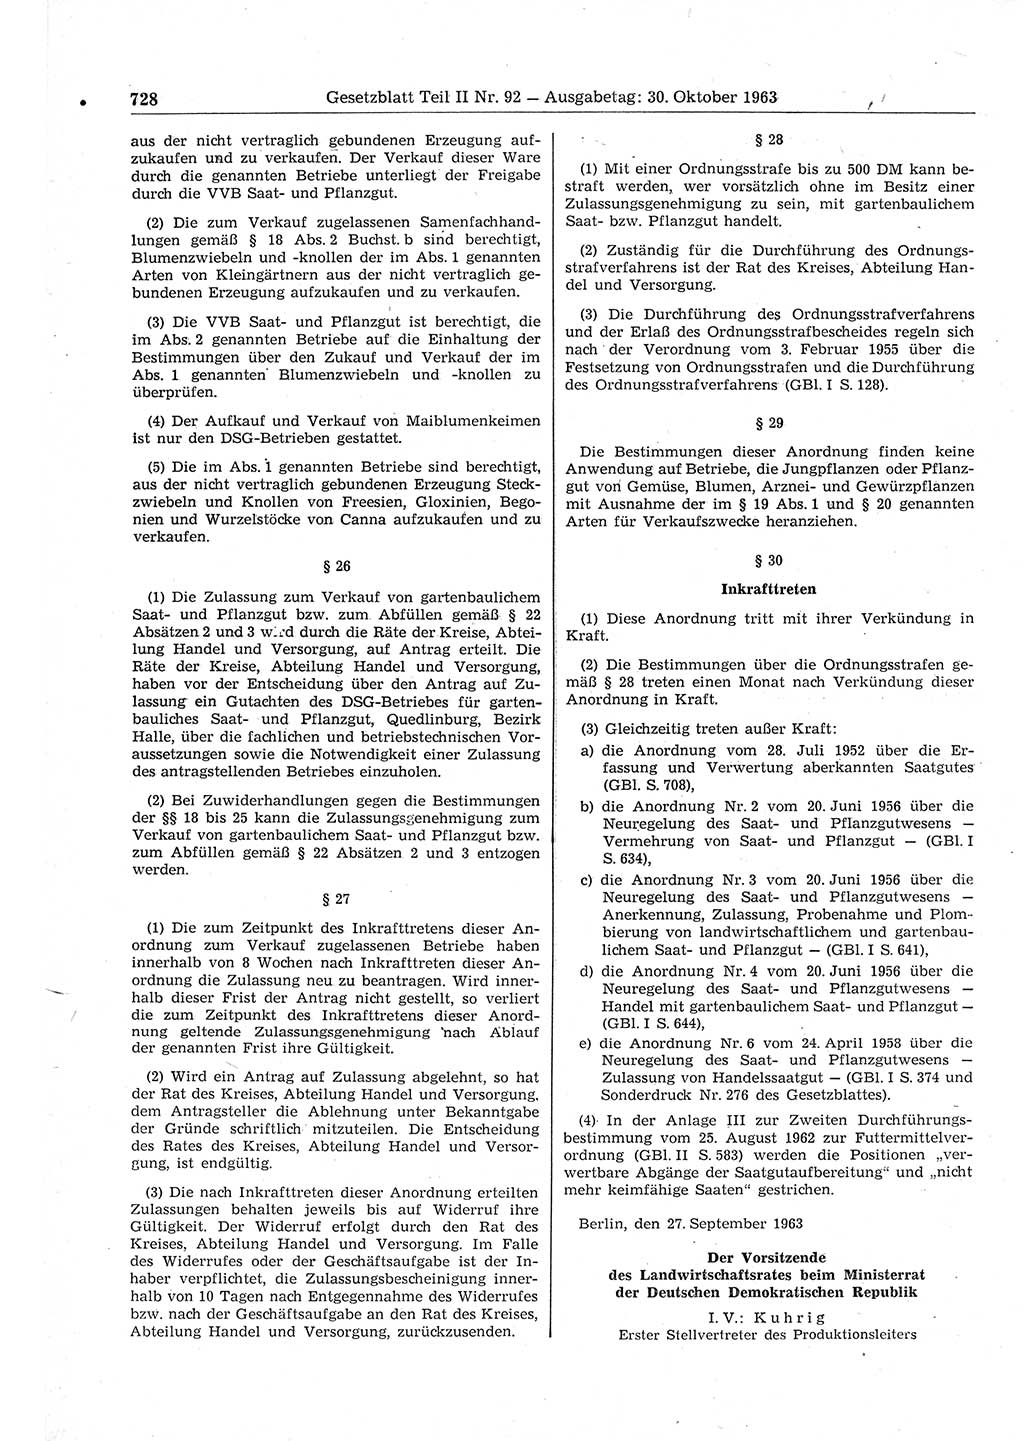 Gesetzblatt (GBl.) der Deutschen Demokratischen Republik (DDR) Teil ⅠⅠ 1963, Seite 728 (GBl. DDR ⅠⅠ 1963, S. 728)